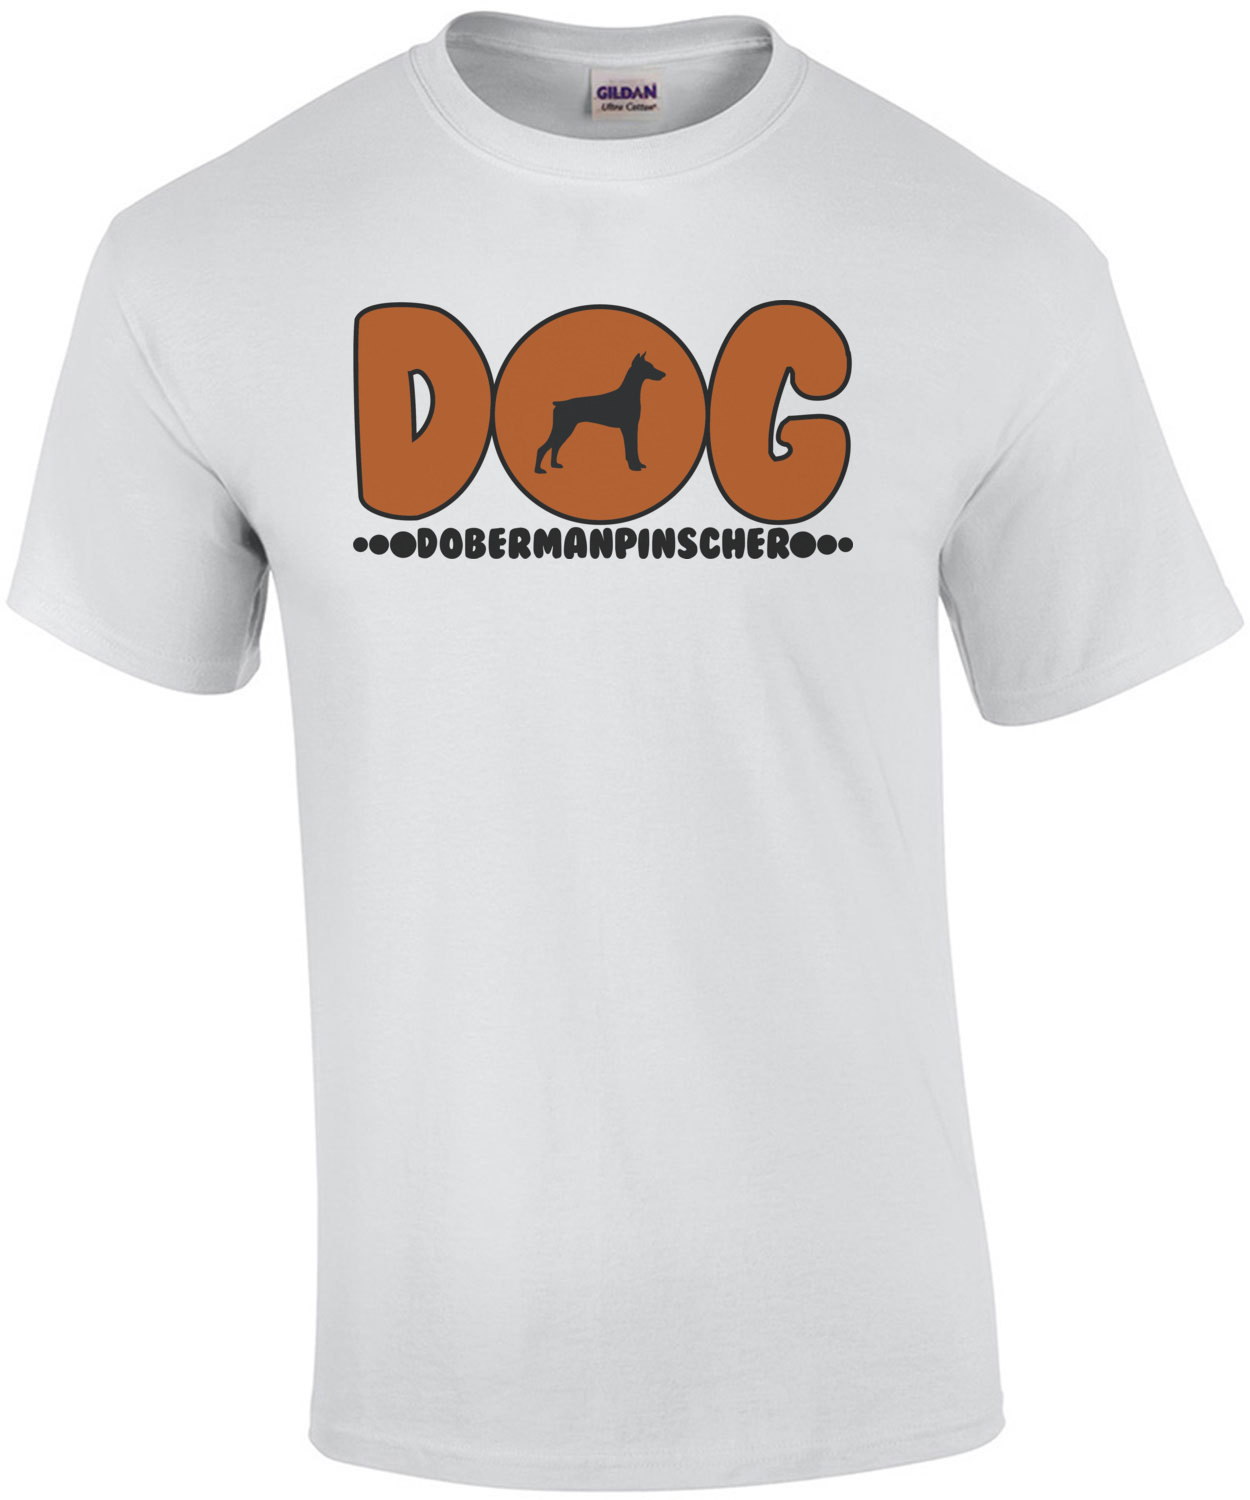 Doberman Pinscher Dog - Doberman Pinscher T-Shirt